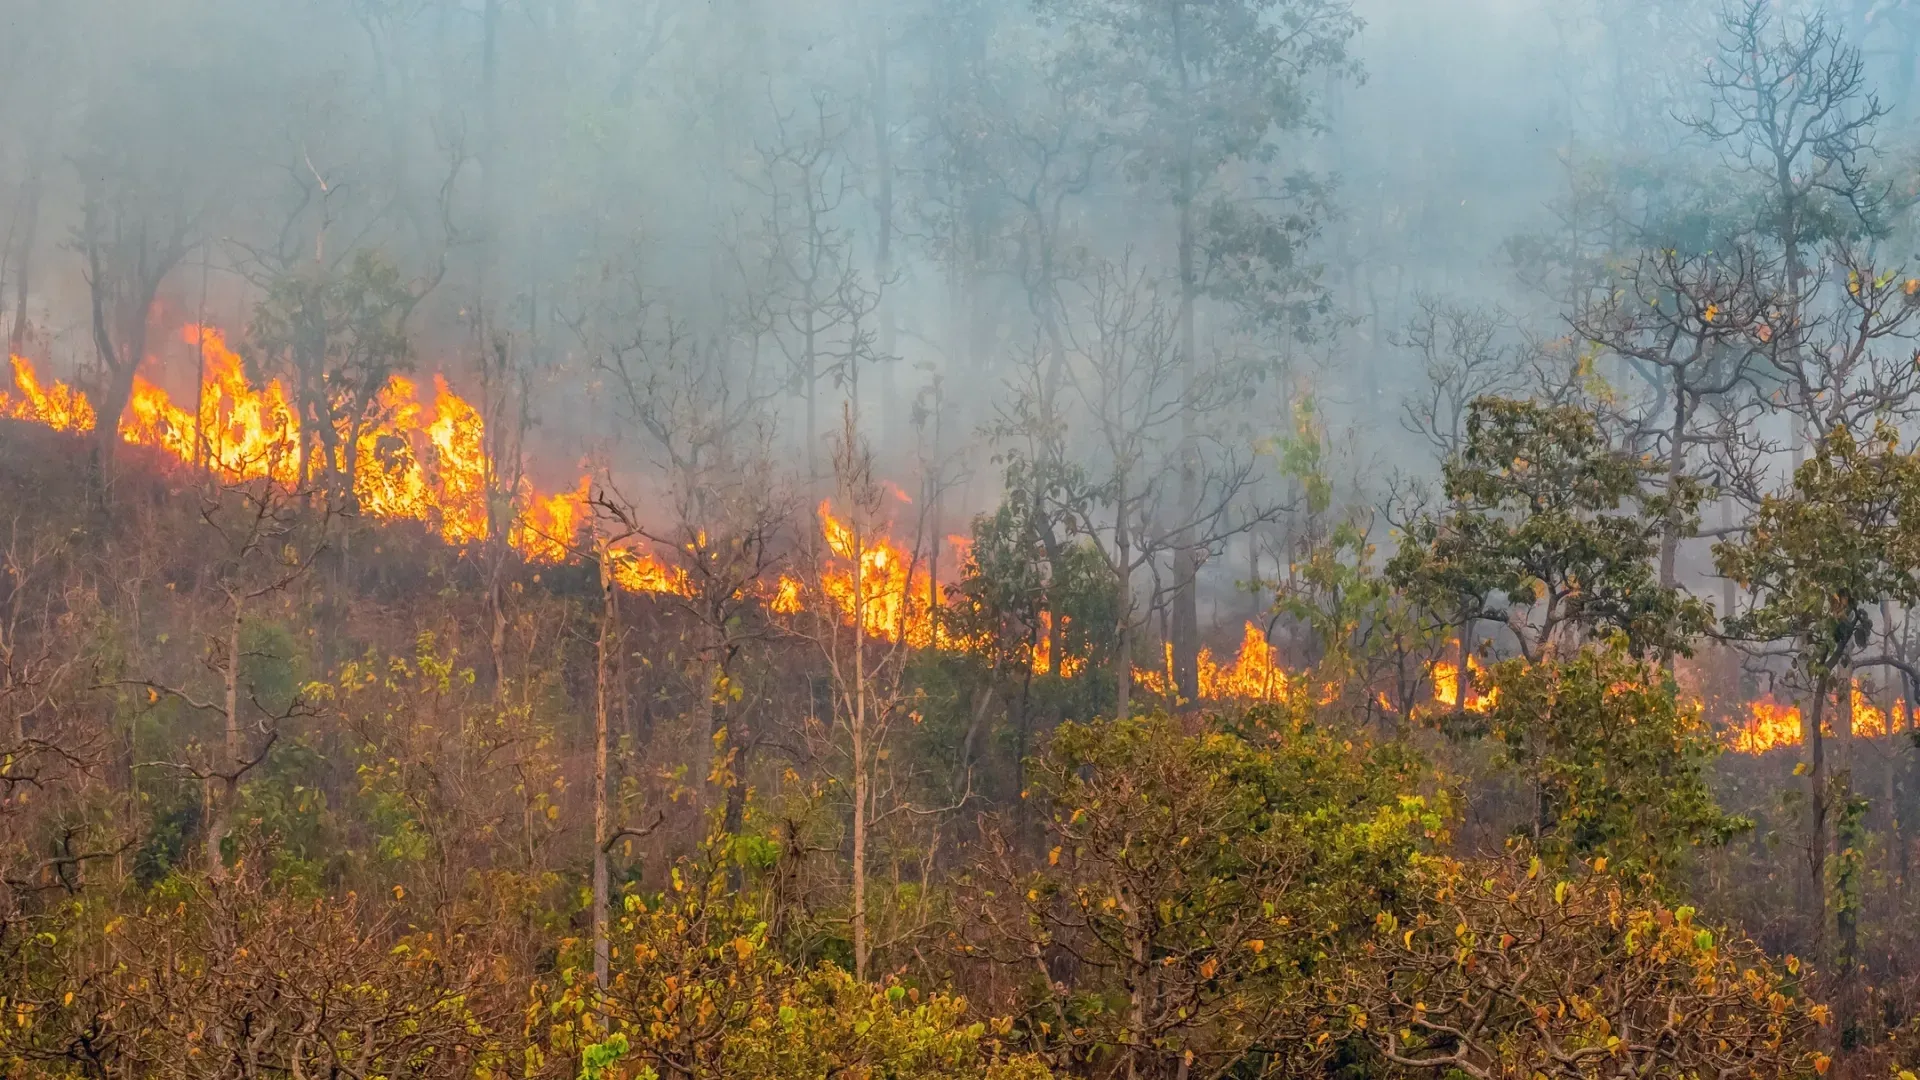 Эксперты отмечают, что наиболее частая причина возгораний в лесах - это человеческий фактор. Фото: Toa55 / shutterstock.com